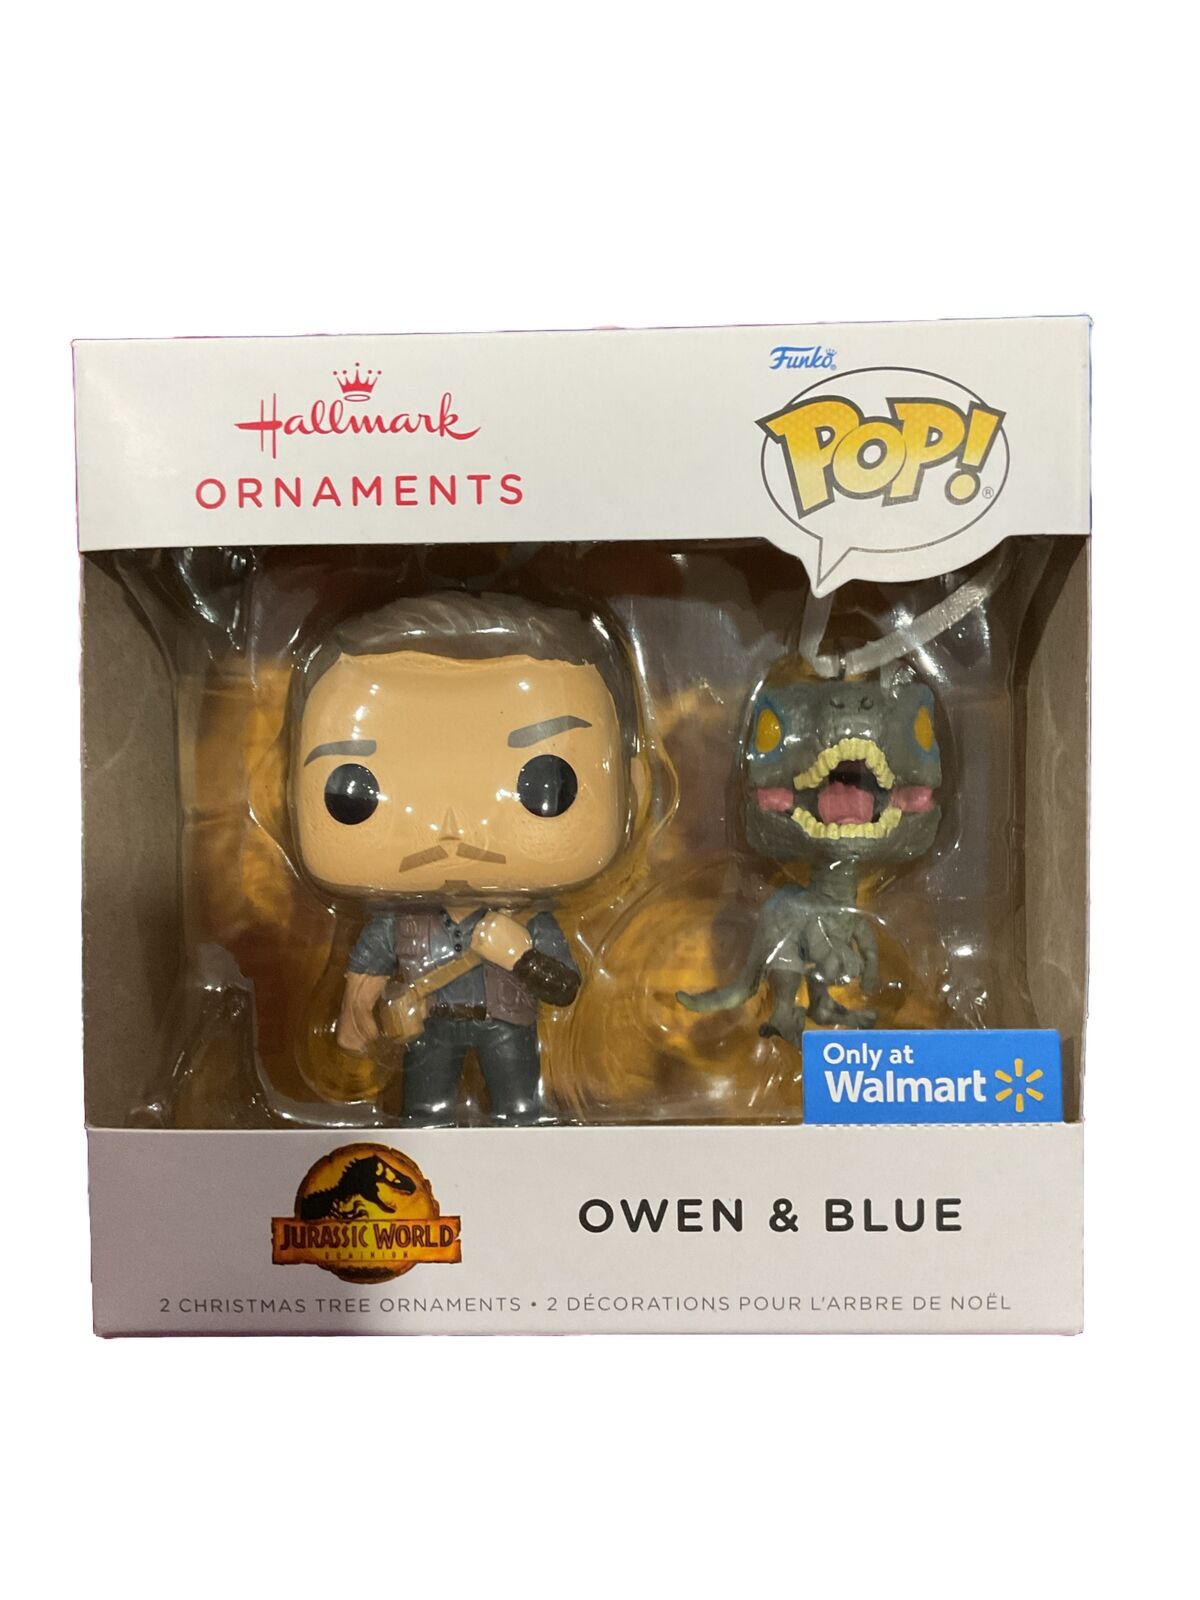 Hallmark Ornament Jurassic World Owen & Blue Walmart Exclusive (New In Box)